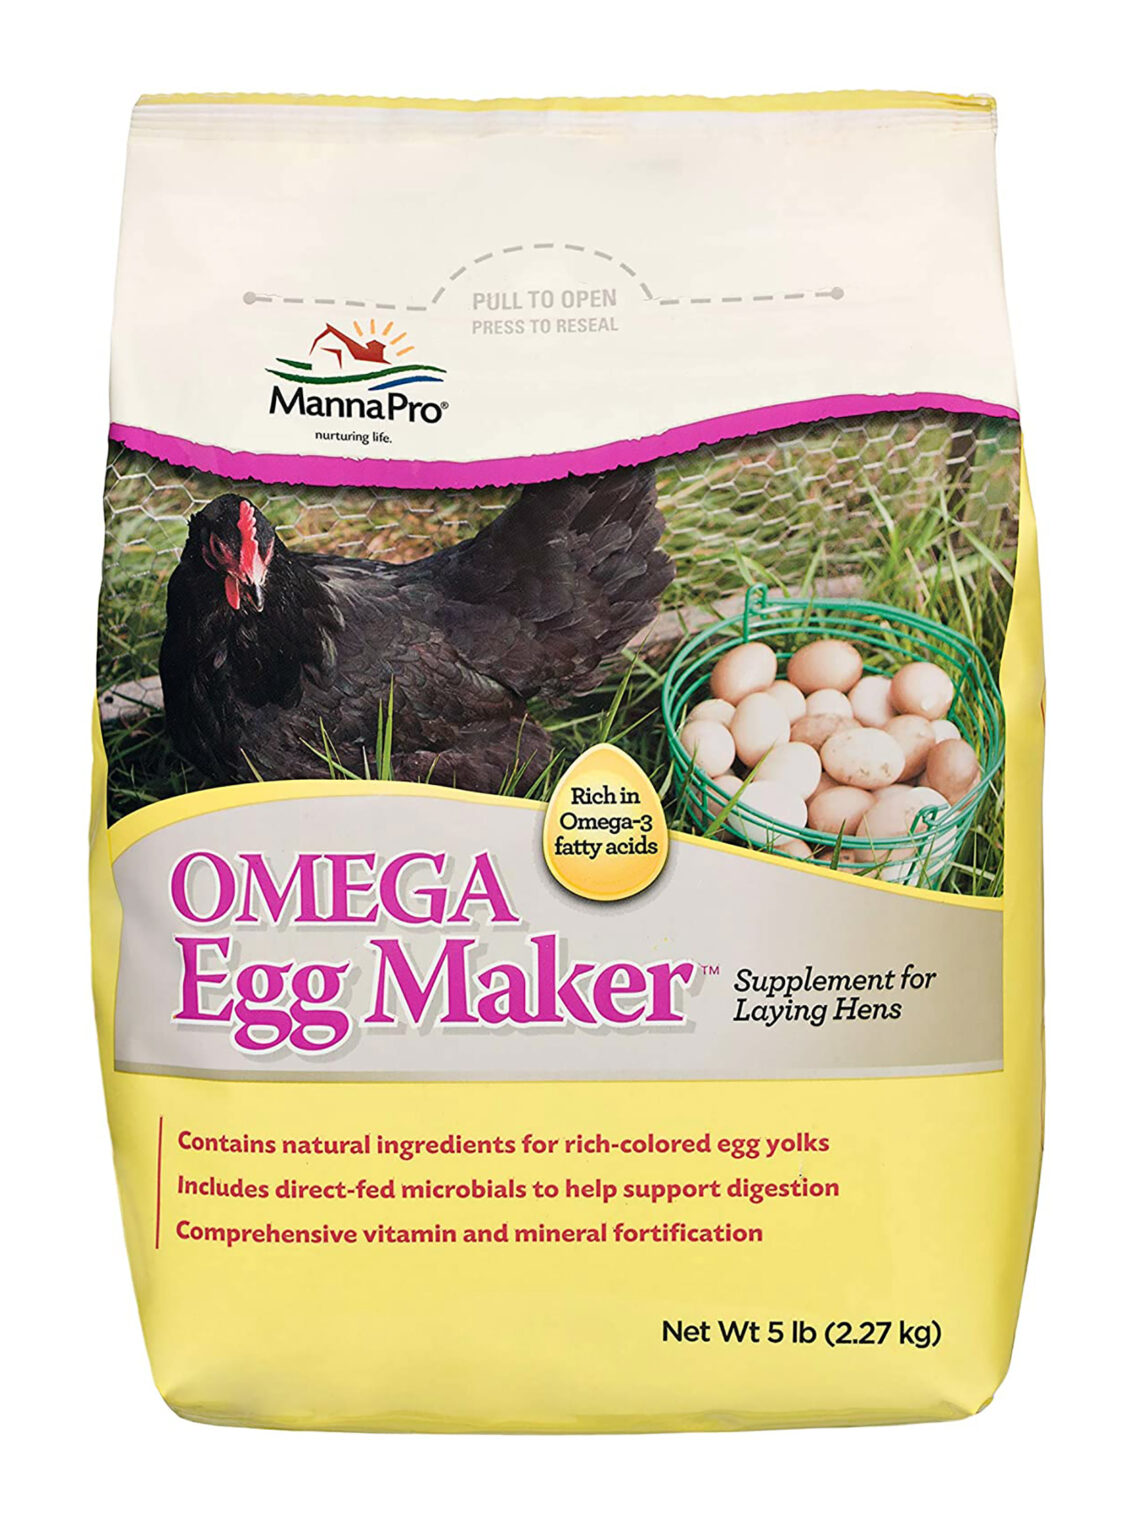 Omega Egg Maker review